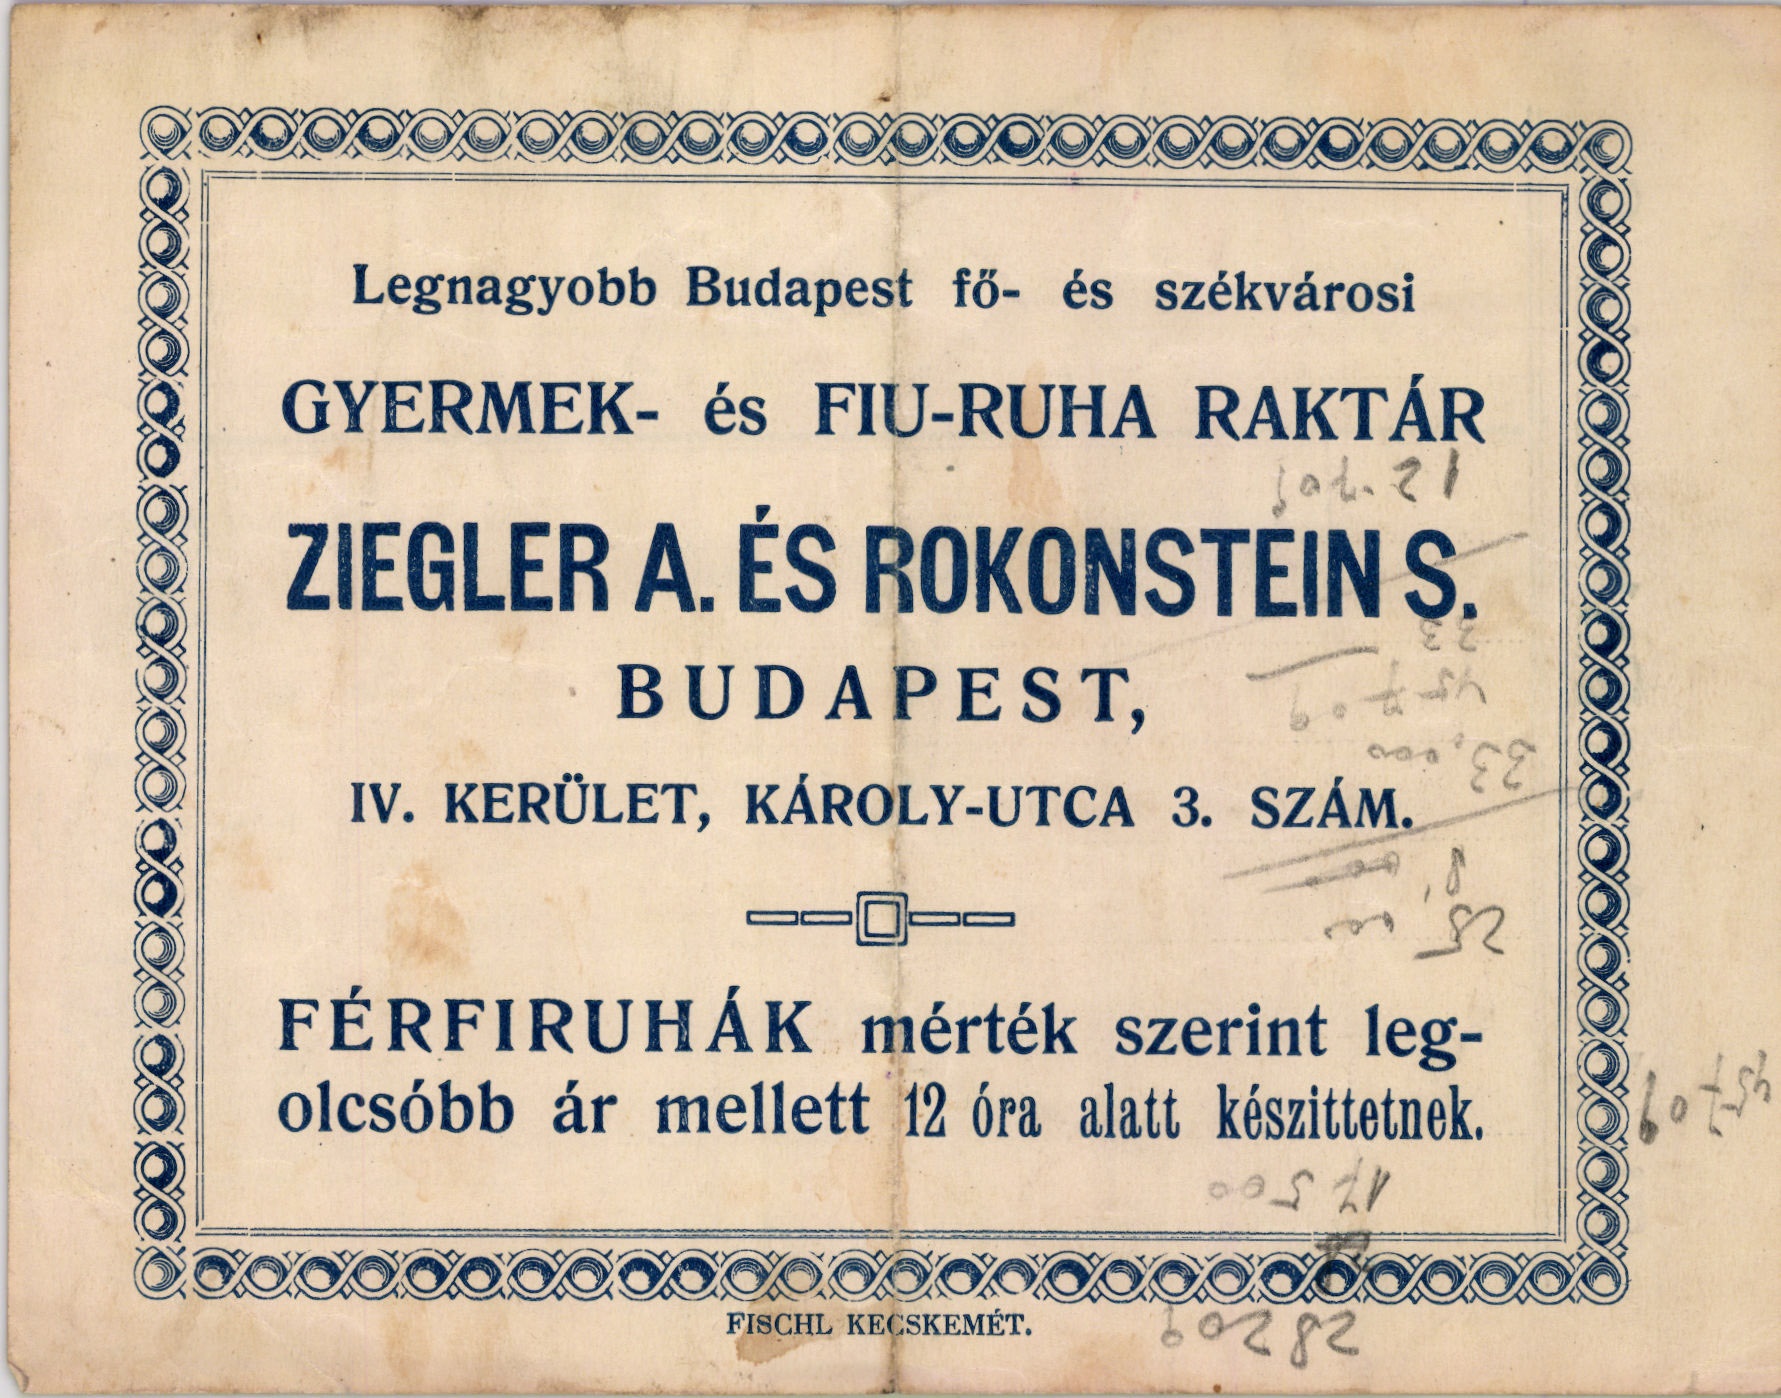 Ziegler a. és Rokonsteins S. gyermek- és fiu-ruha raktár (Magyar Kereskedelmi és Vendéglátóipari Múzeum CC BY-NC-SA)